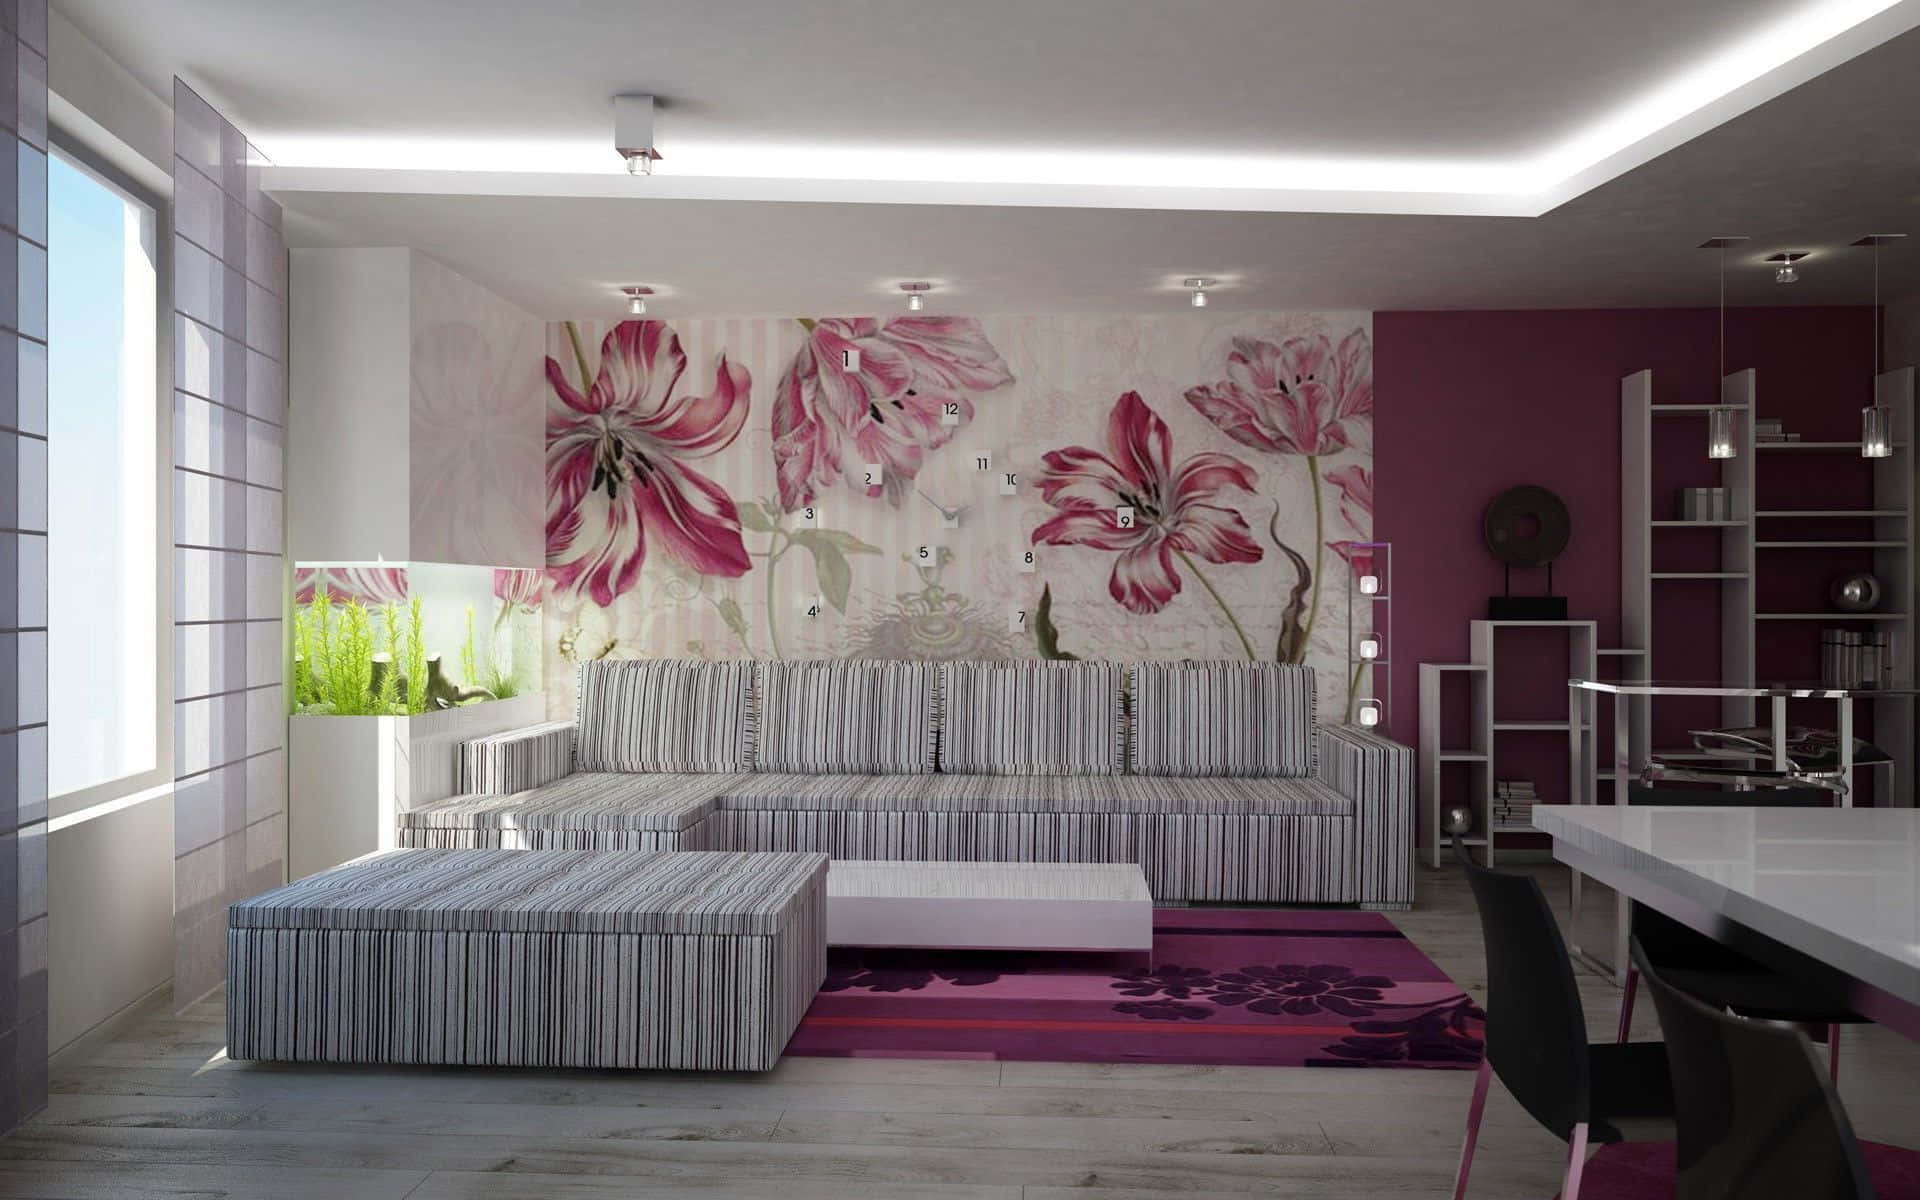 Einwohnzimmer Mit Einem Rosa-weißen Blumenmuster.